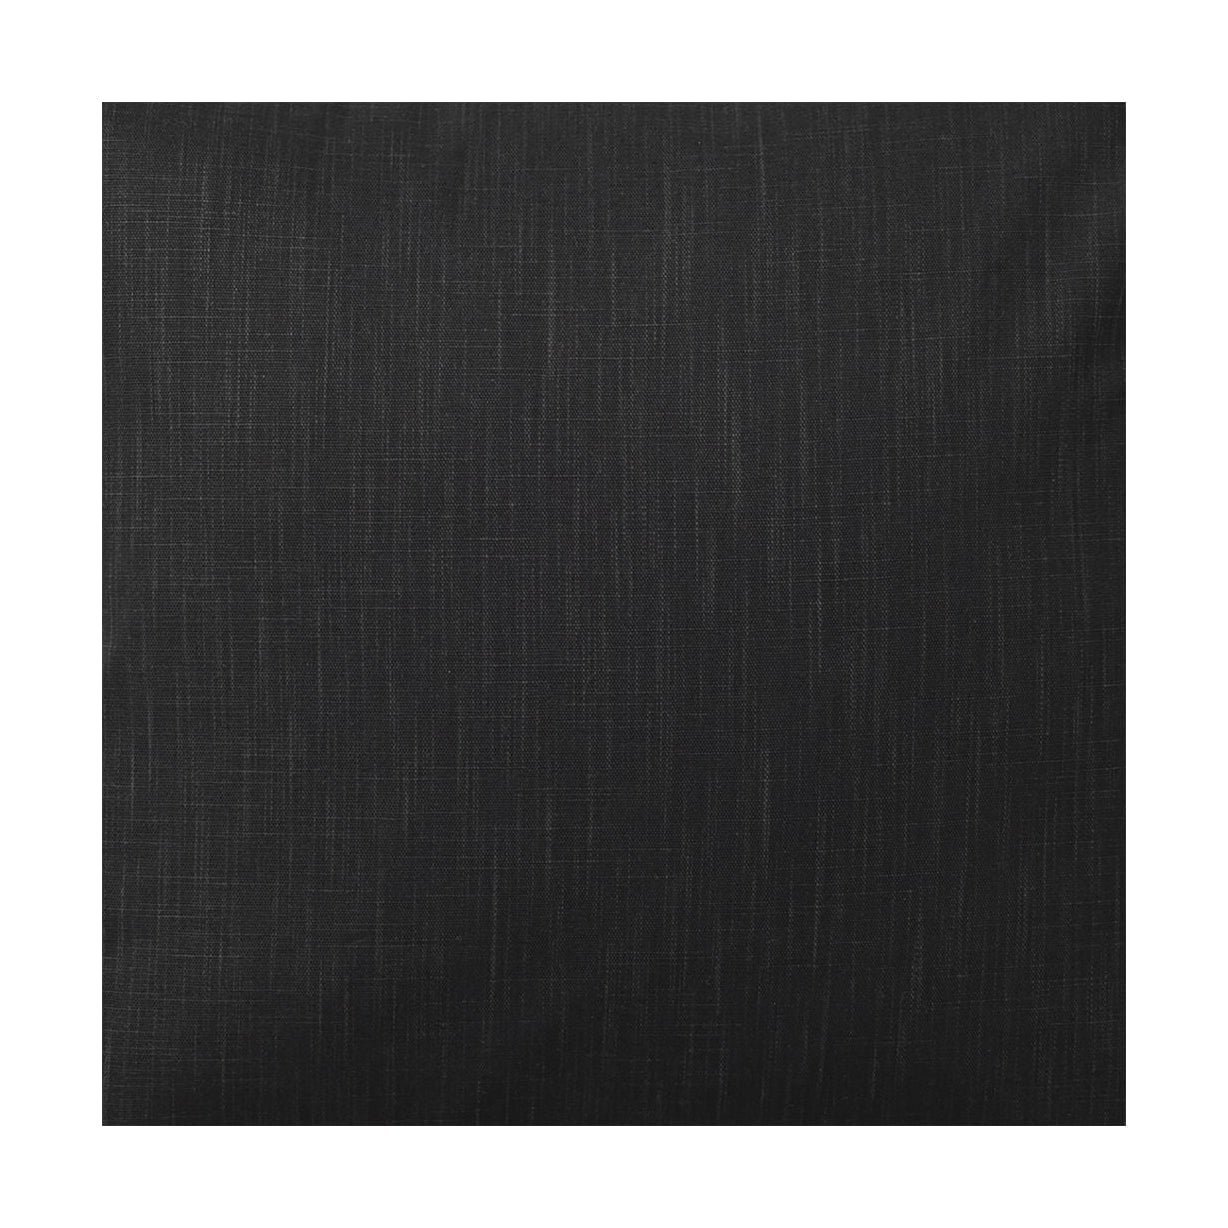 Largeur de tissu Spira Klotz 150 cm (prix par mètre), asphalte